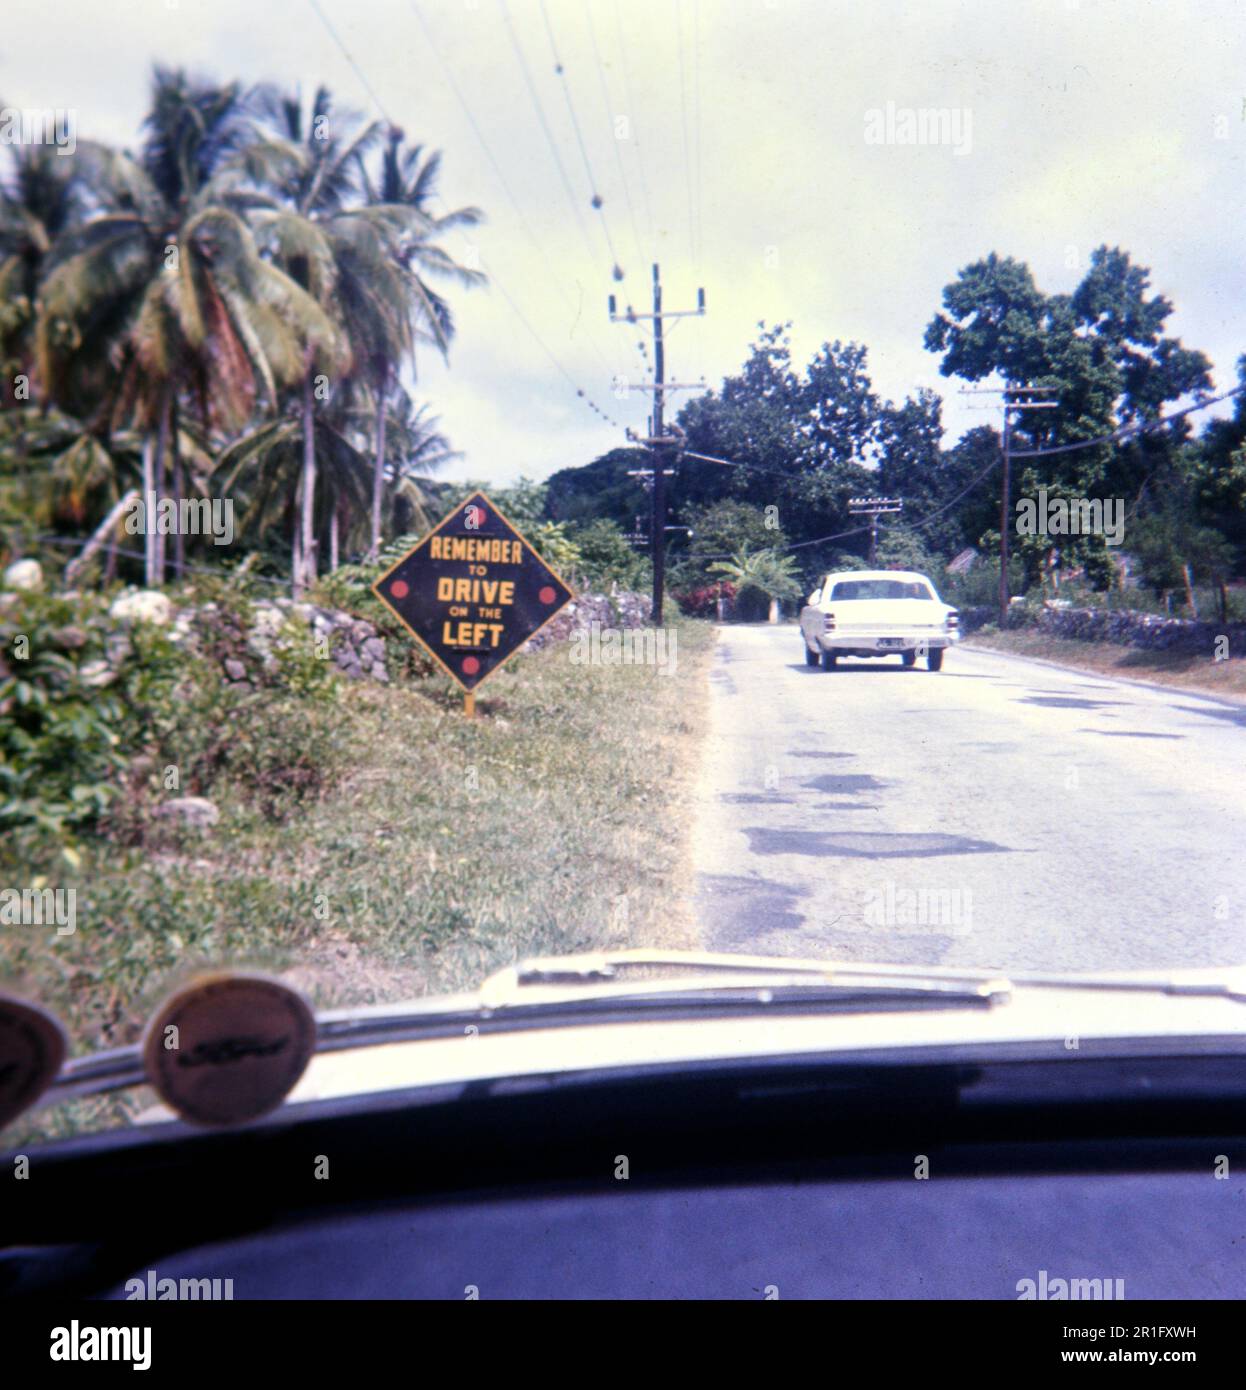 Un touriste américain prend une photo, tout en conduisant, d'un panneau rappelant aux visiteurs de conduire sur le côté gauche de la route pendant qu'ils se trouvent à la Jamaïque ca. 1969 Banque D'Images